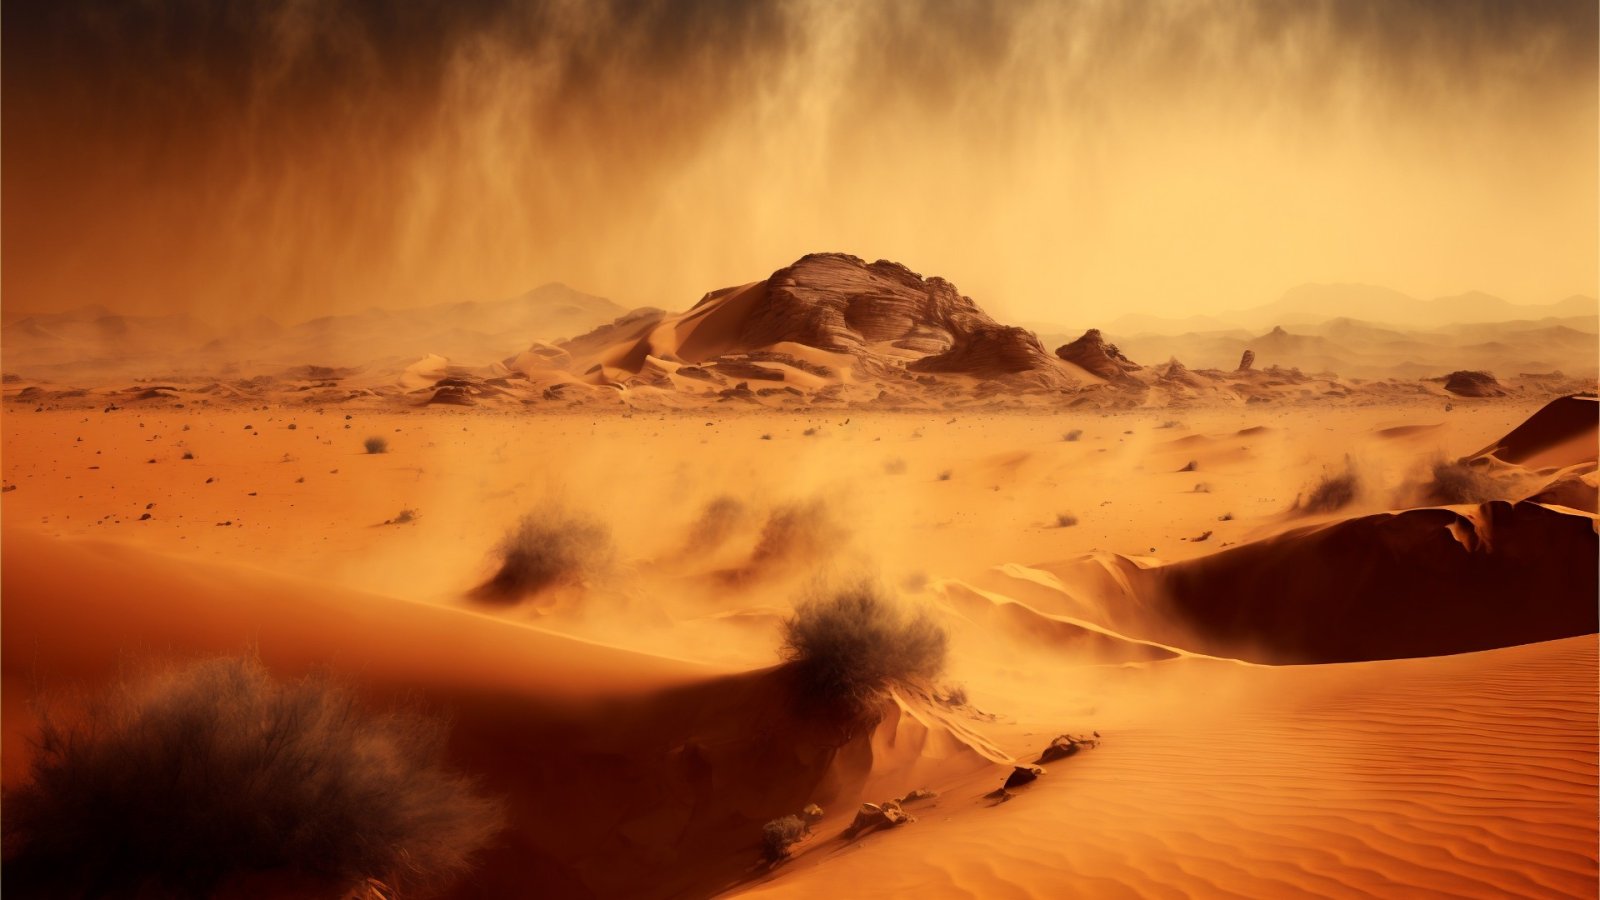 Dune: パート 2 で期待される内容の包括的な概要